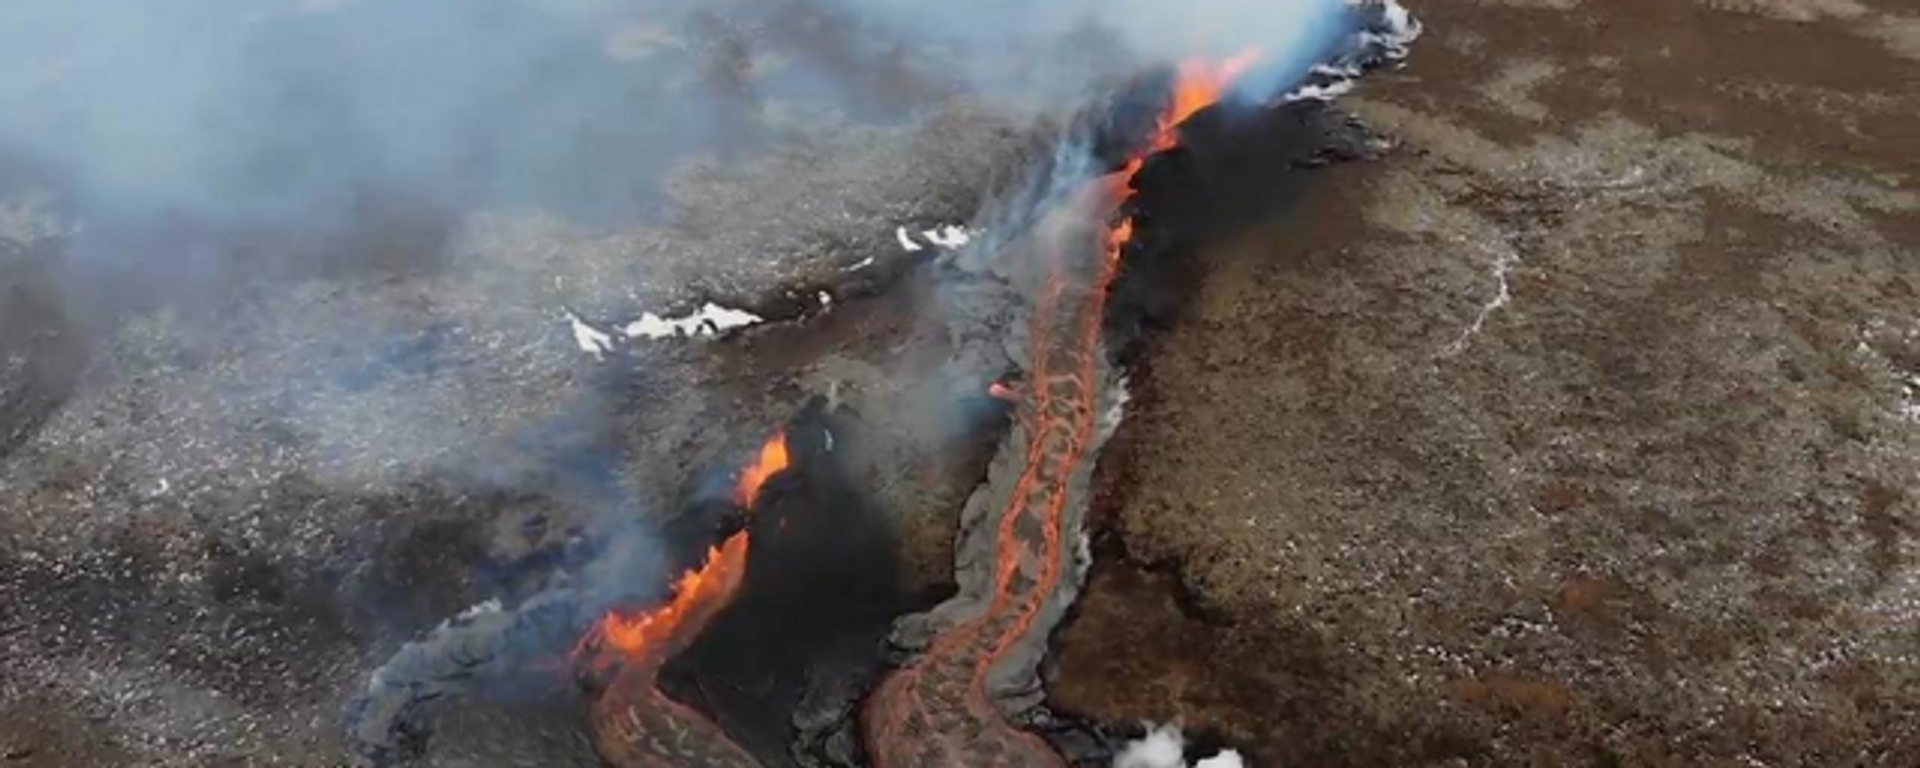 Islandia: Imágenes aéreas muestran la lava que fluye desde una nueva fisura en sitio de erupción volcánica cerca de Reikiavik - Sputnik Mundo, 1920, 07.04.2021